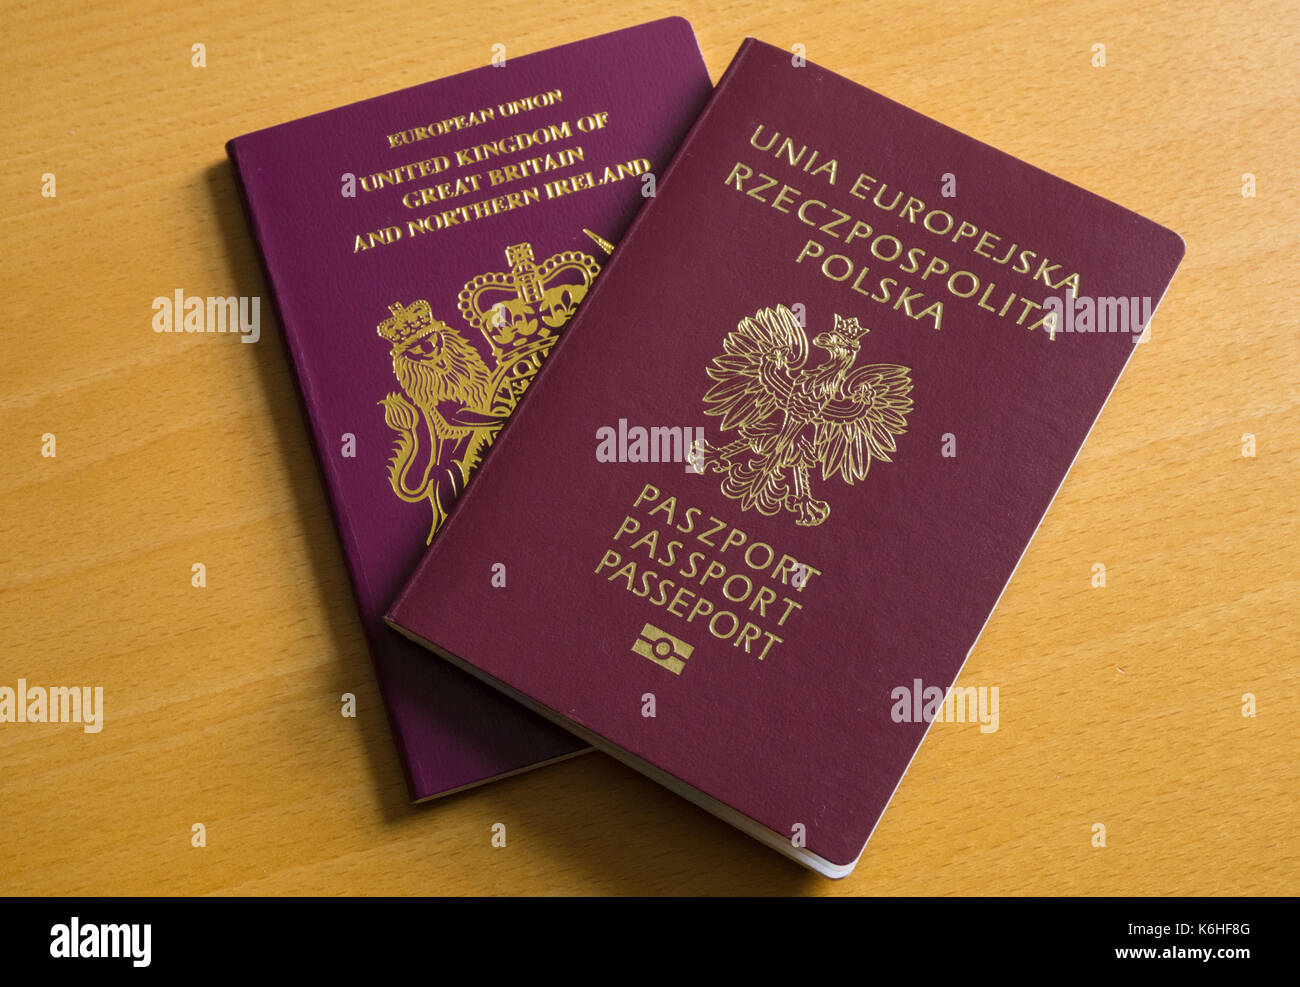 Pasaporte británico y Pasaporte Polaco Foto de stock